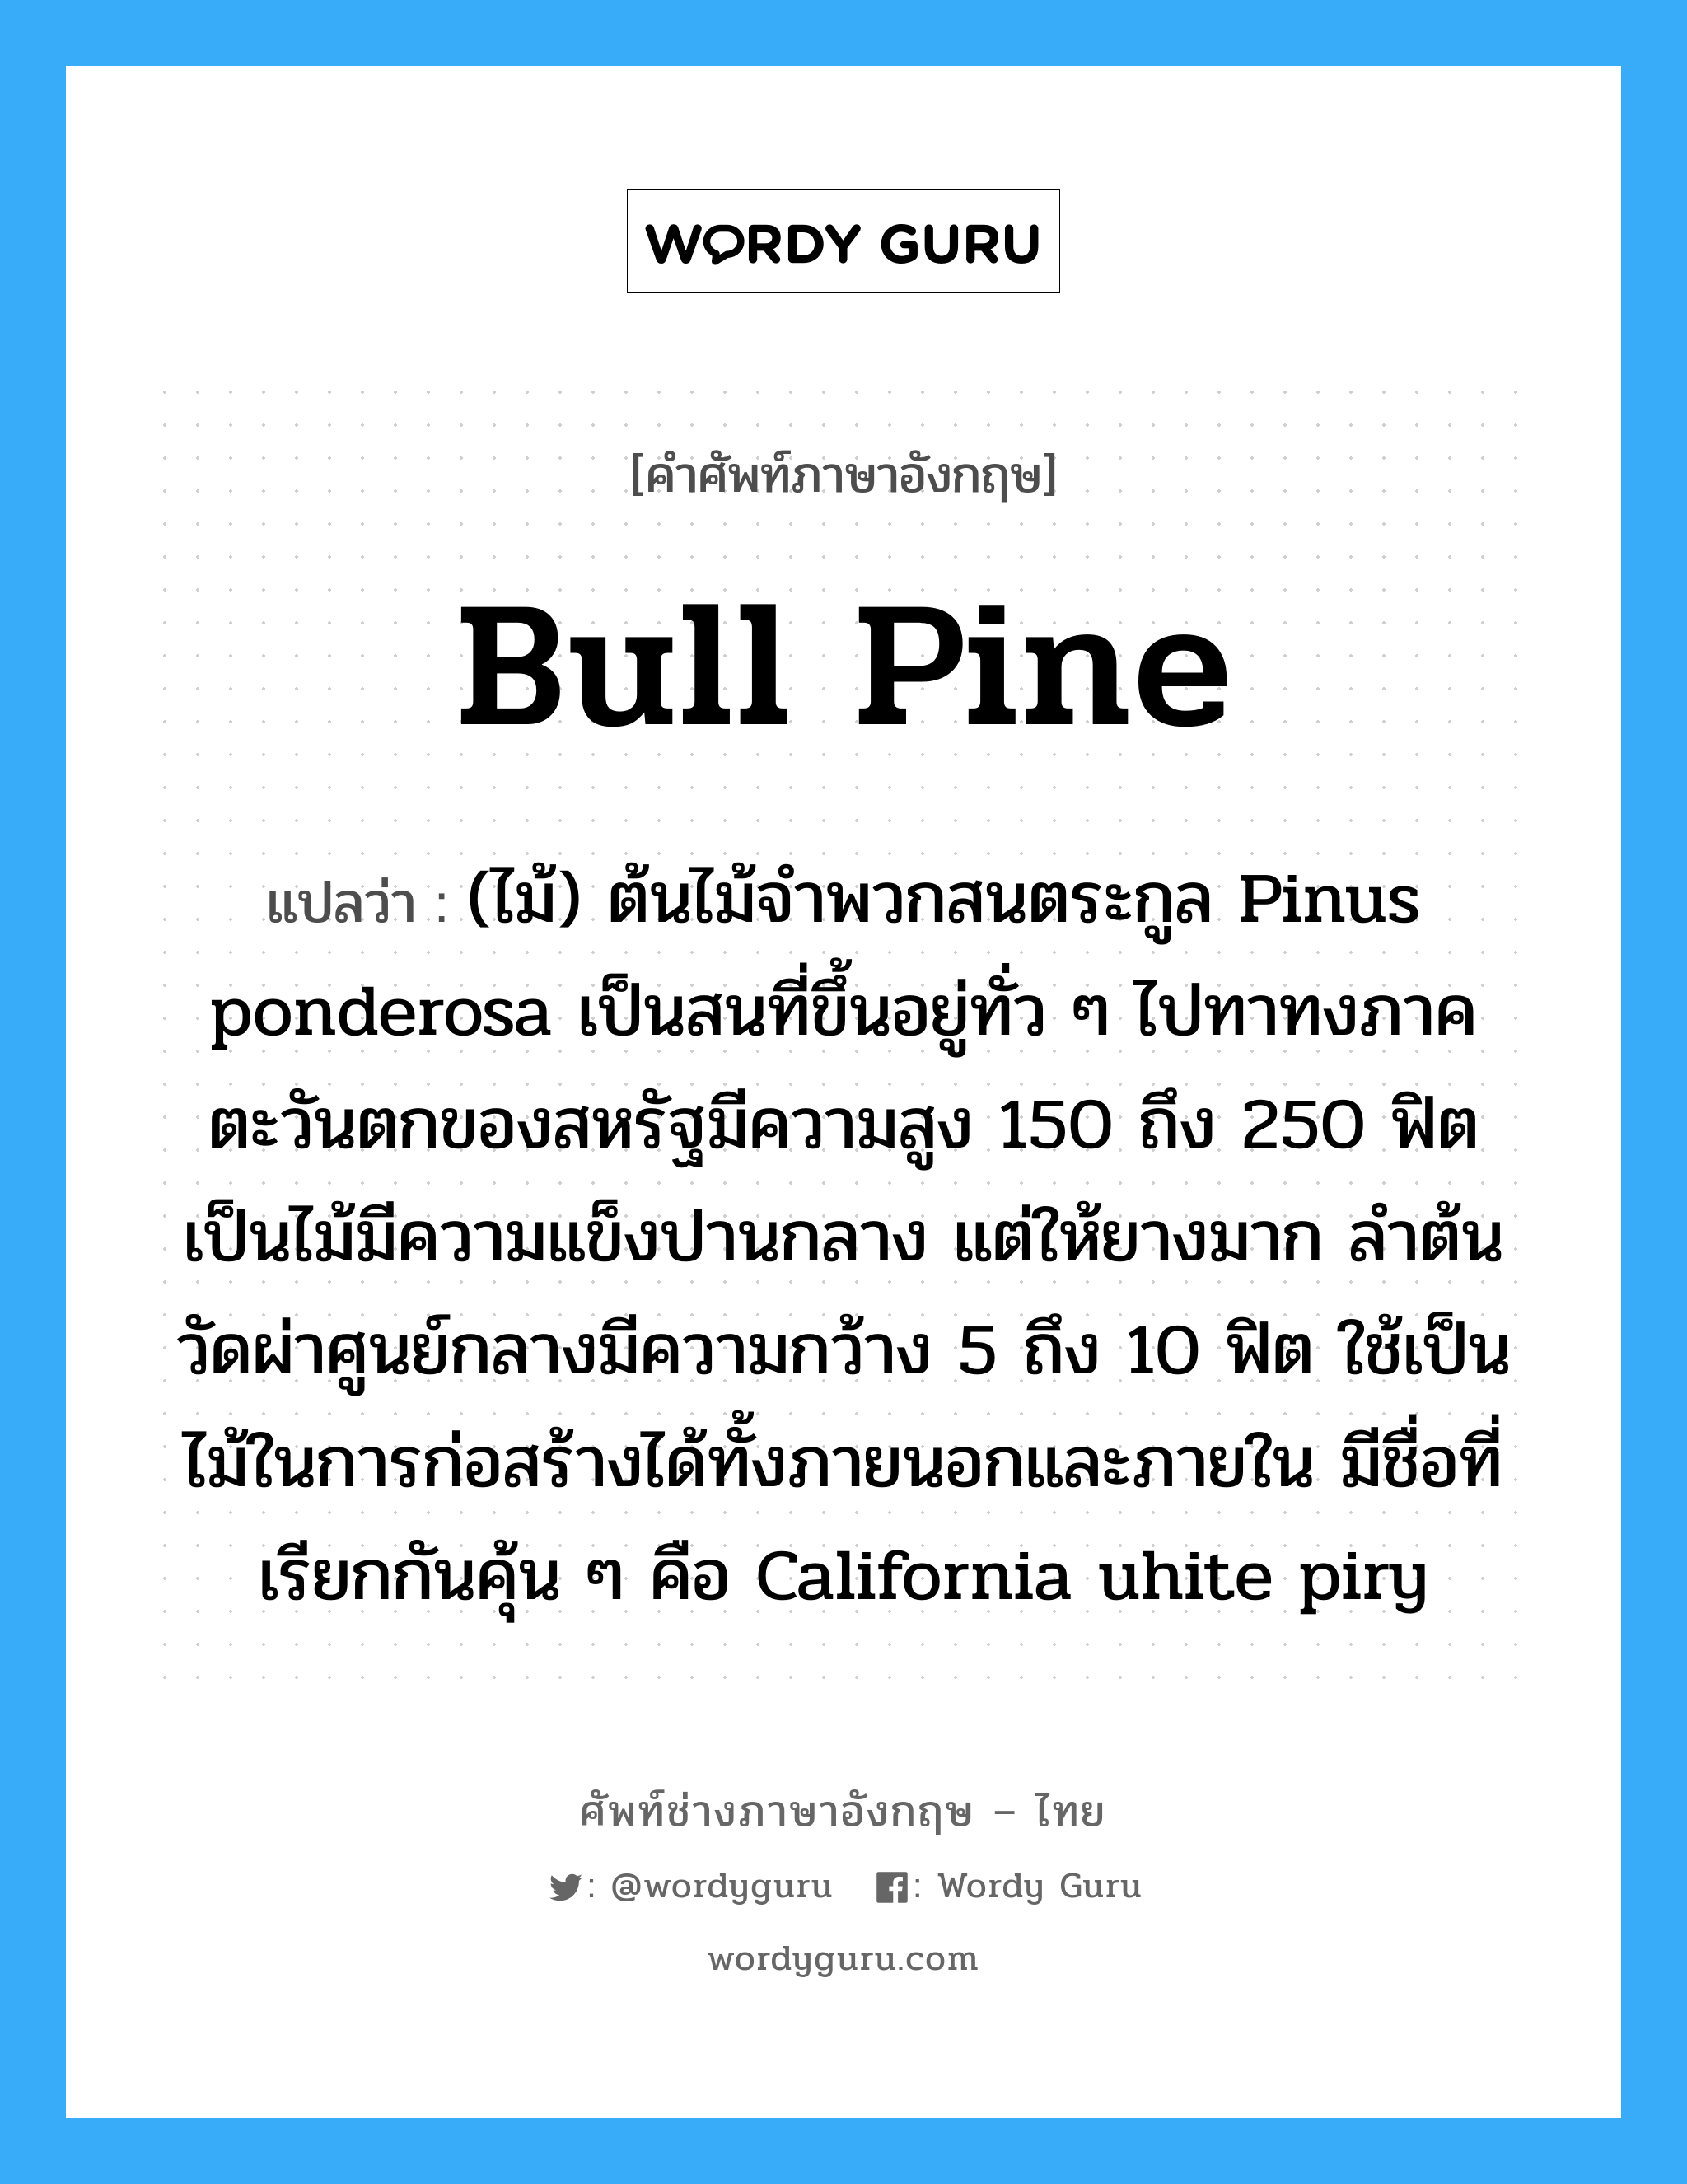 bull pine แปลว่า?, คำศัพท์ช่างภาษาอังกฤษ - ไทย bull pine คำศัพท์ภาษาอังกฤษ bull pine แปลว่า (ไม้) ต้นไม้จำพวกสนตระกูล Pinus ponderosa เป็นสนที่ขึ้นอยู่ทั่ว ๆ ไปทาทงภาคตะวันตกของสหรัฐมีความสูง 150 ถึง 250 ฟิต เป็นไม้มีความแข็งปานกลาง แต่ให้ยางมาก ลำต้นวัดผ่าศูนย์กลางมีความกว้าง 5 ถึง 10 ฟิต ใช้เป็นไม้ในการก่อสร้างได้ทั้งภายนอกและภายใน มีชื่อที่เรียกกันคุ้น ๆ คือ California uhite piry